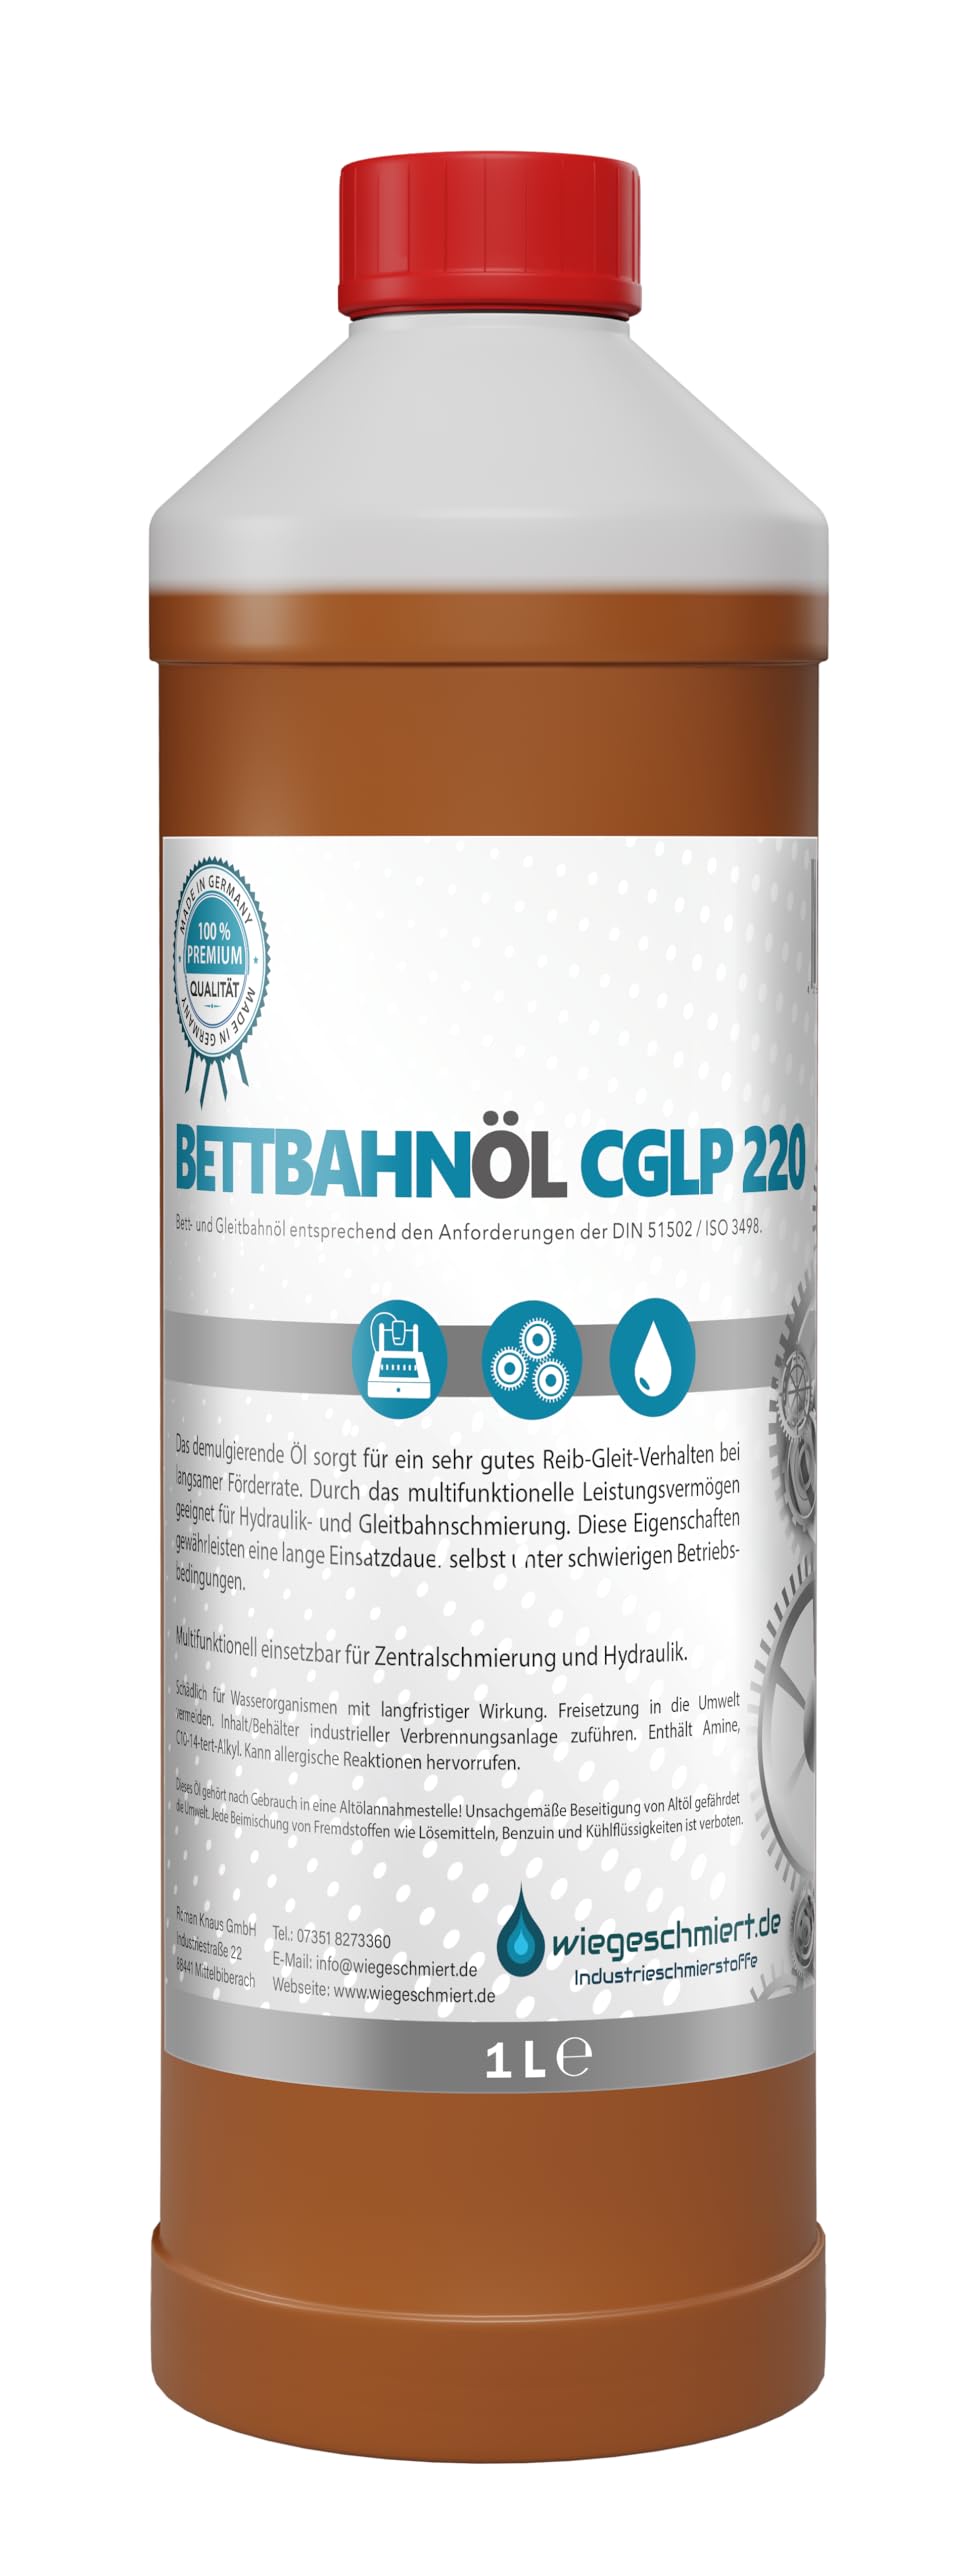 Bettbahnöl Gleitbahnöl CGLP 220 nach DIN 51502 / ISO 3498 (1 Liter) von wiegeschmiert.de